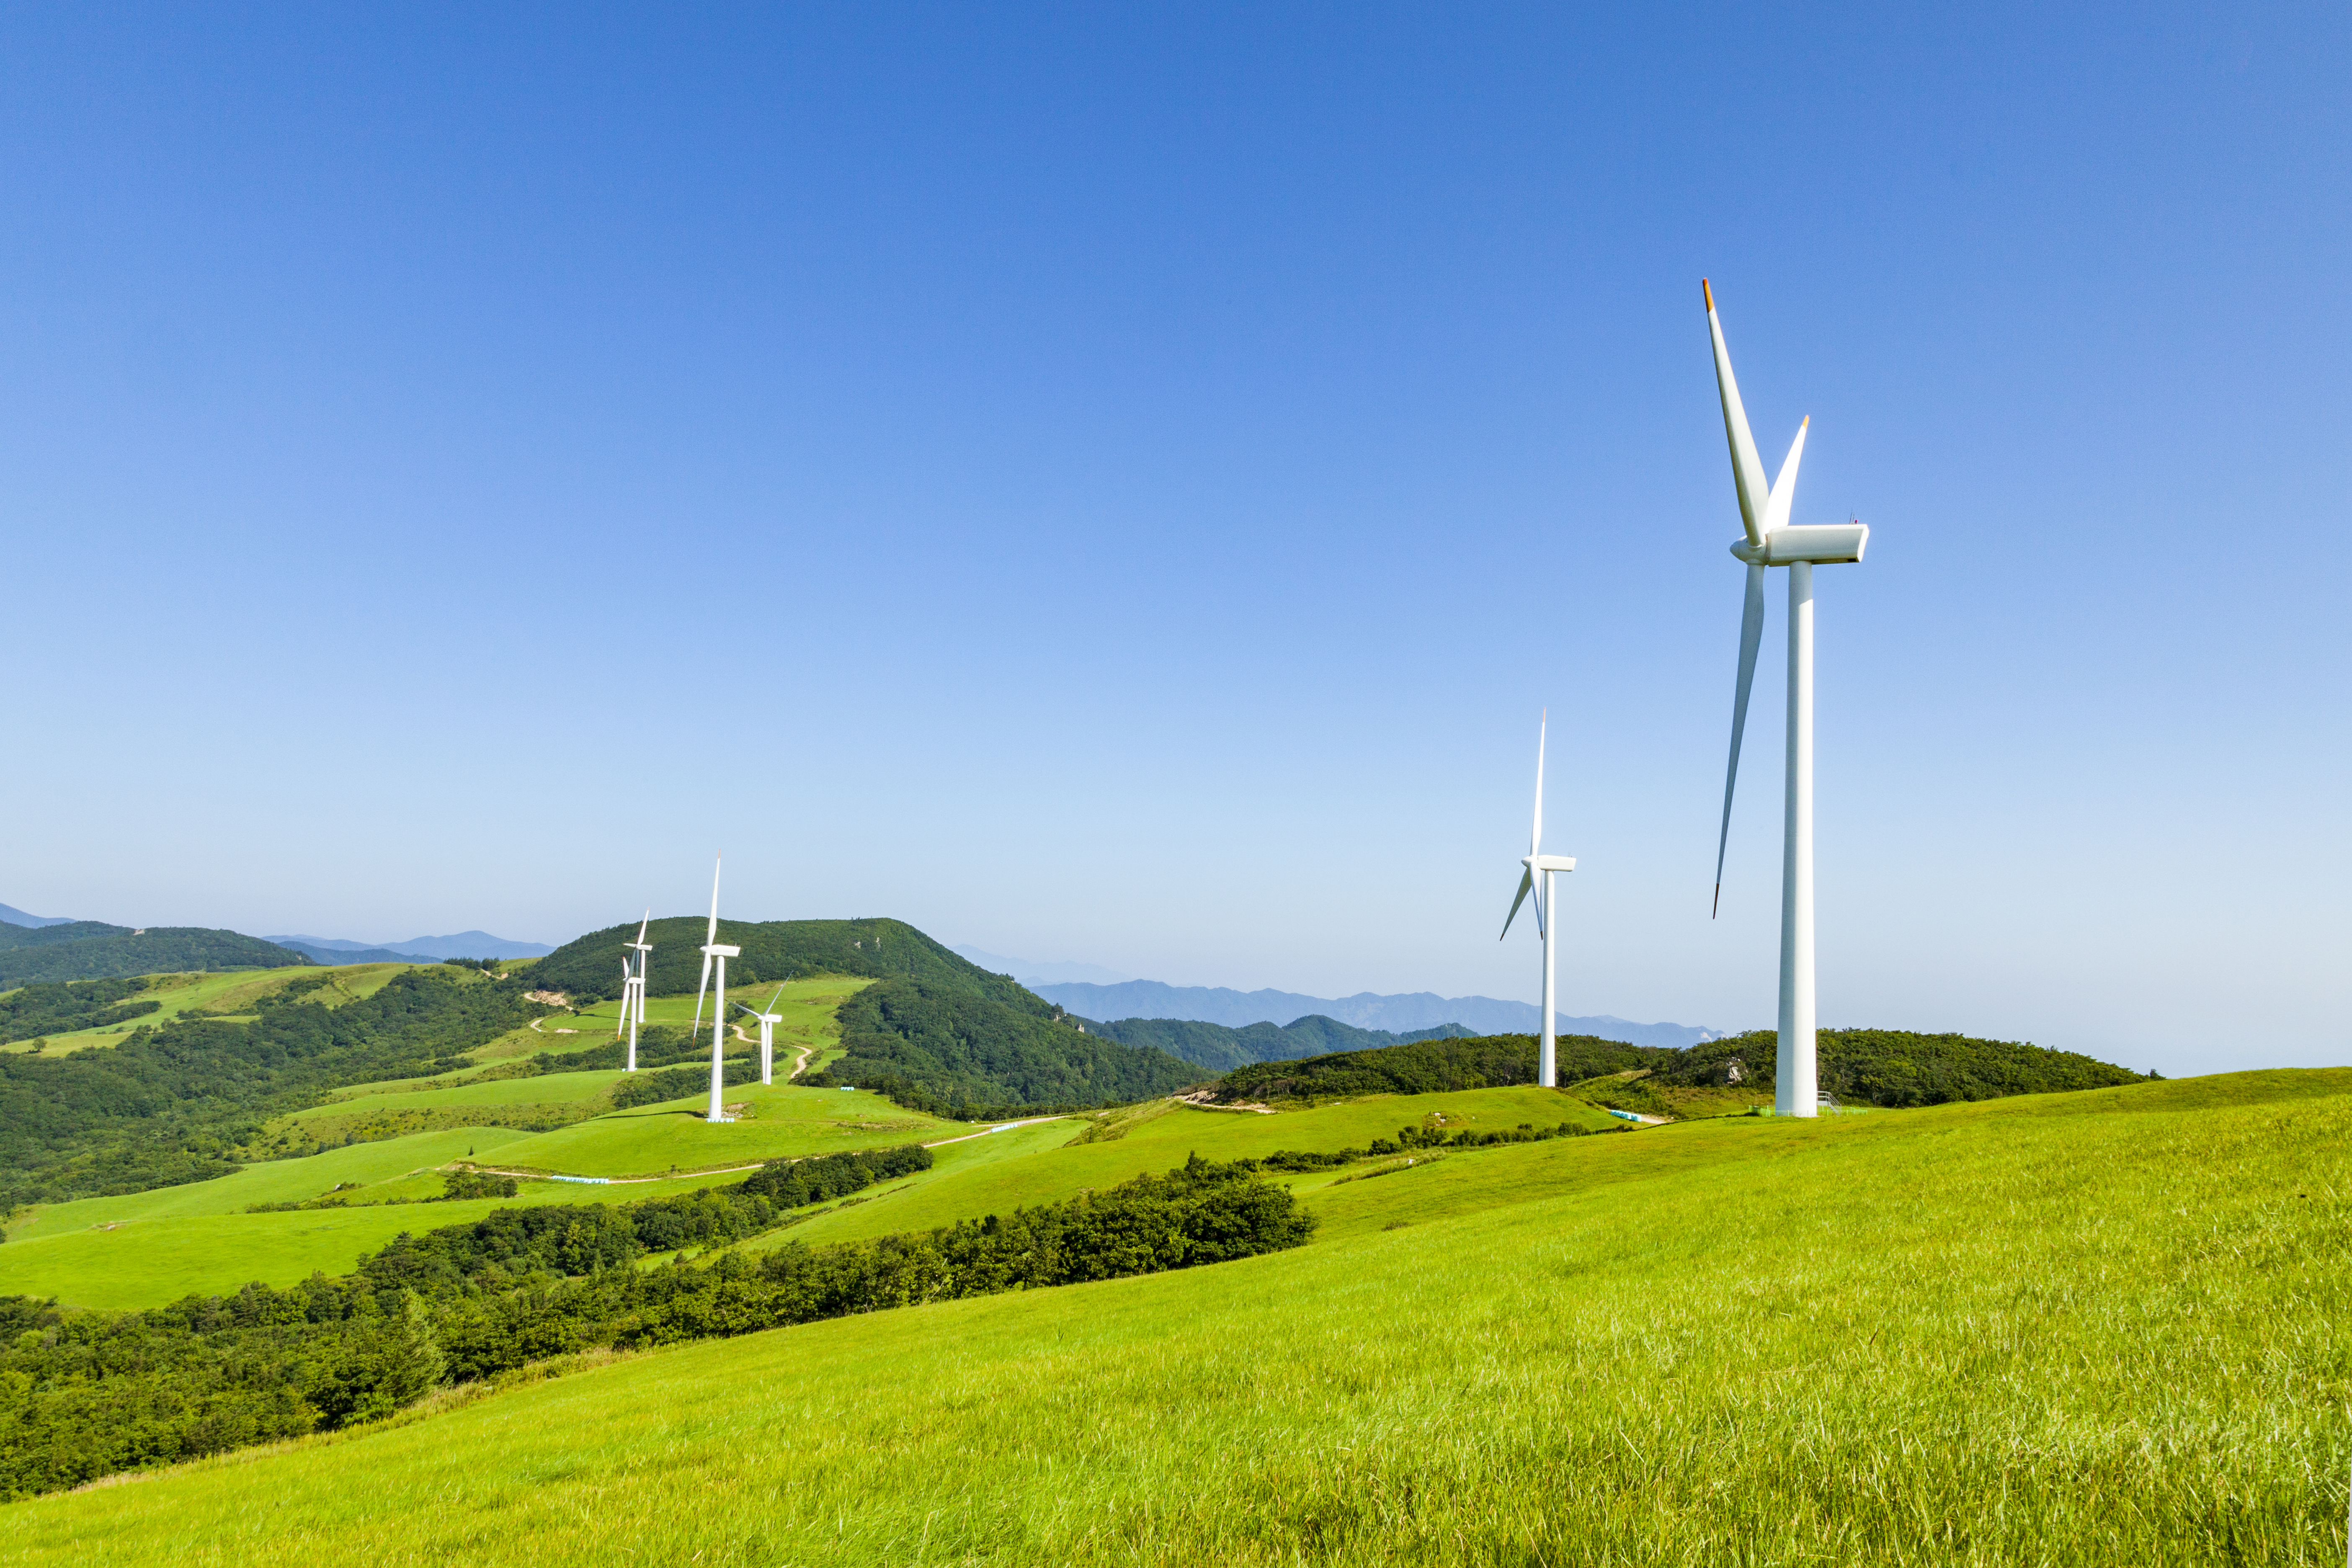 풍력 에너지는 자연에서 발생하는 바람을 이용하여 에너지를 생성하는 방식입니다. 풍력 발전소는 풍력터빈을 사용하여 바람의 힘을 전기로 변환합니다. 풍력 에너지는 지속적으로 생성되는 자연 에너지이기 때문에 친환경 에너지 중 하나로 평가받고 있습니다.